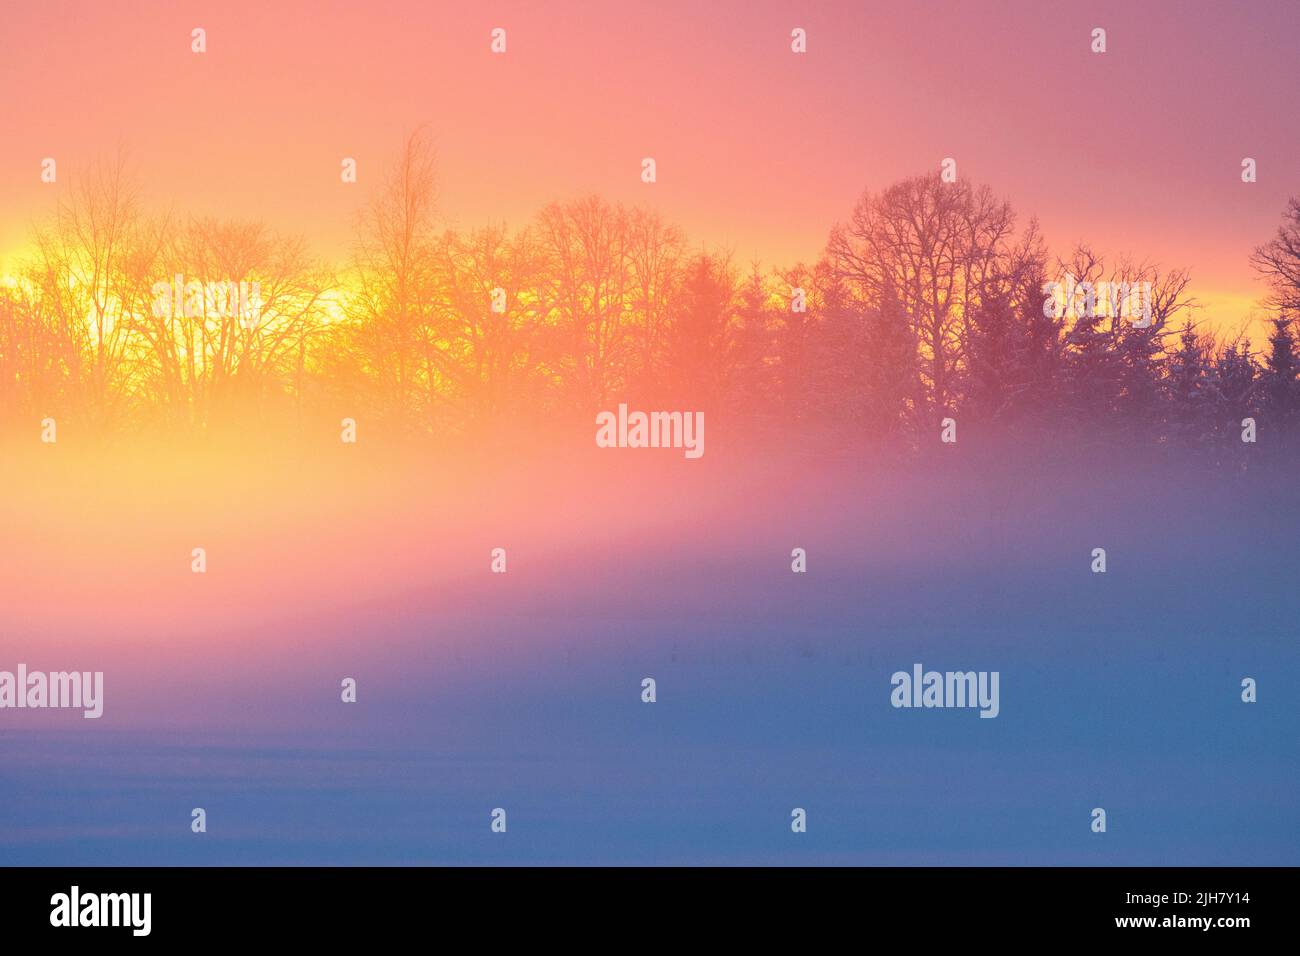 Un coucher de soleil hivernal avec une lumière vive qui se reflète sur la brume montante Banque D'Images